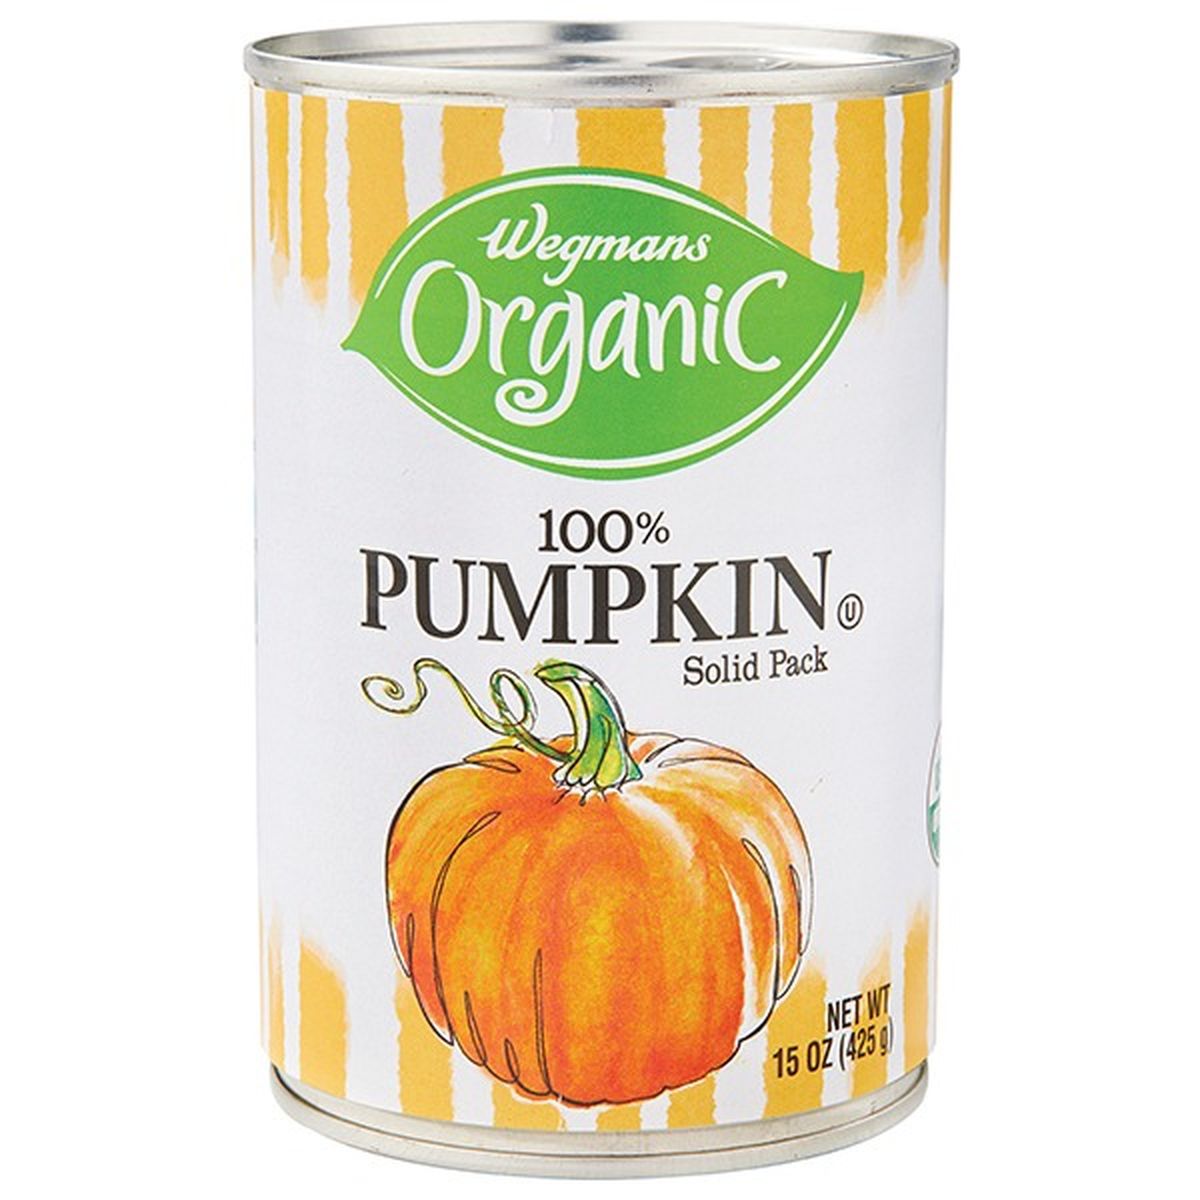 Calories in Wegmans Organic 100% Pumpkin, Solid Pack